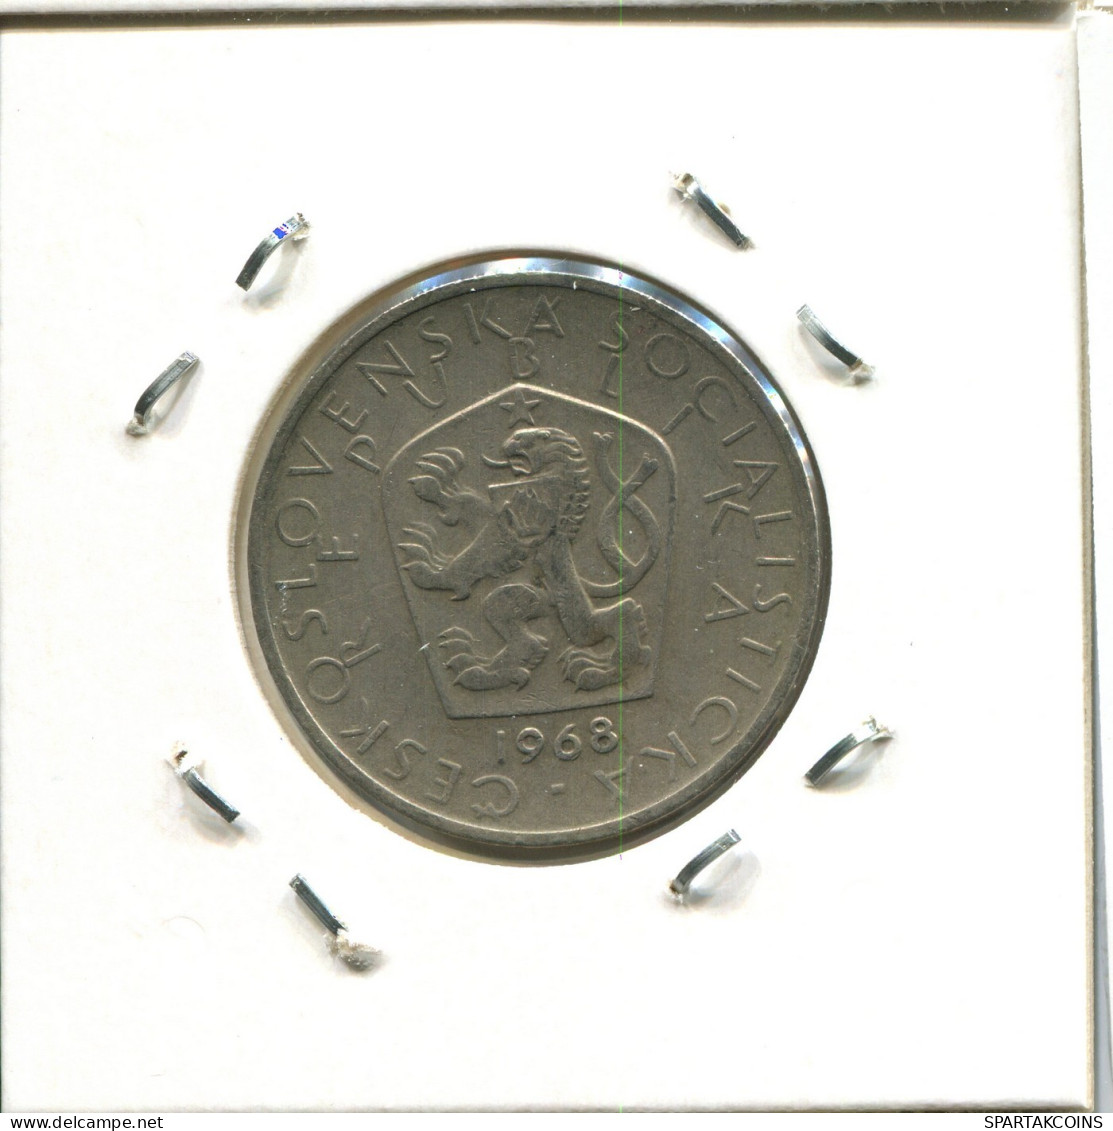 5 KORUN 1968 TSCHECHOSLOWAKEI CZECHOSLOWAKEI SLOVAKIA Münze #AW848.D.A - Czechoslovakia